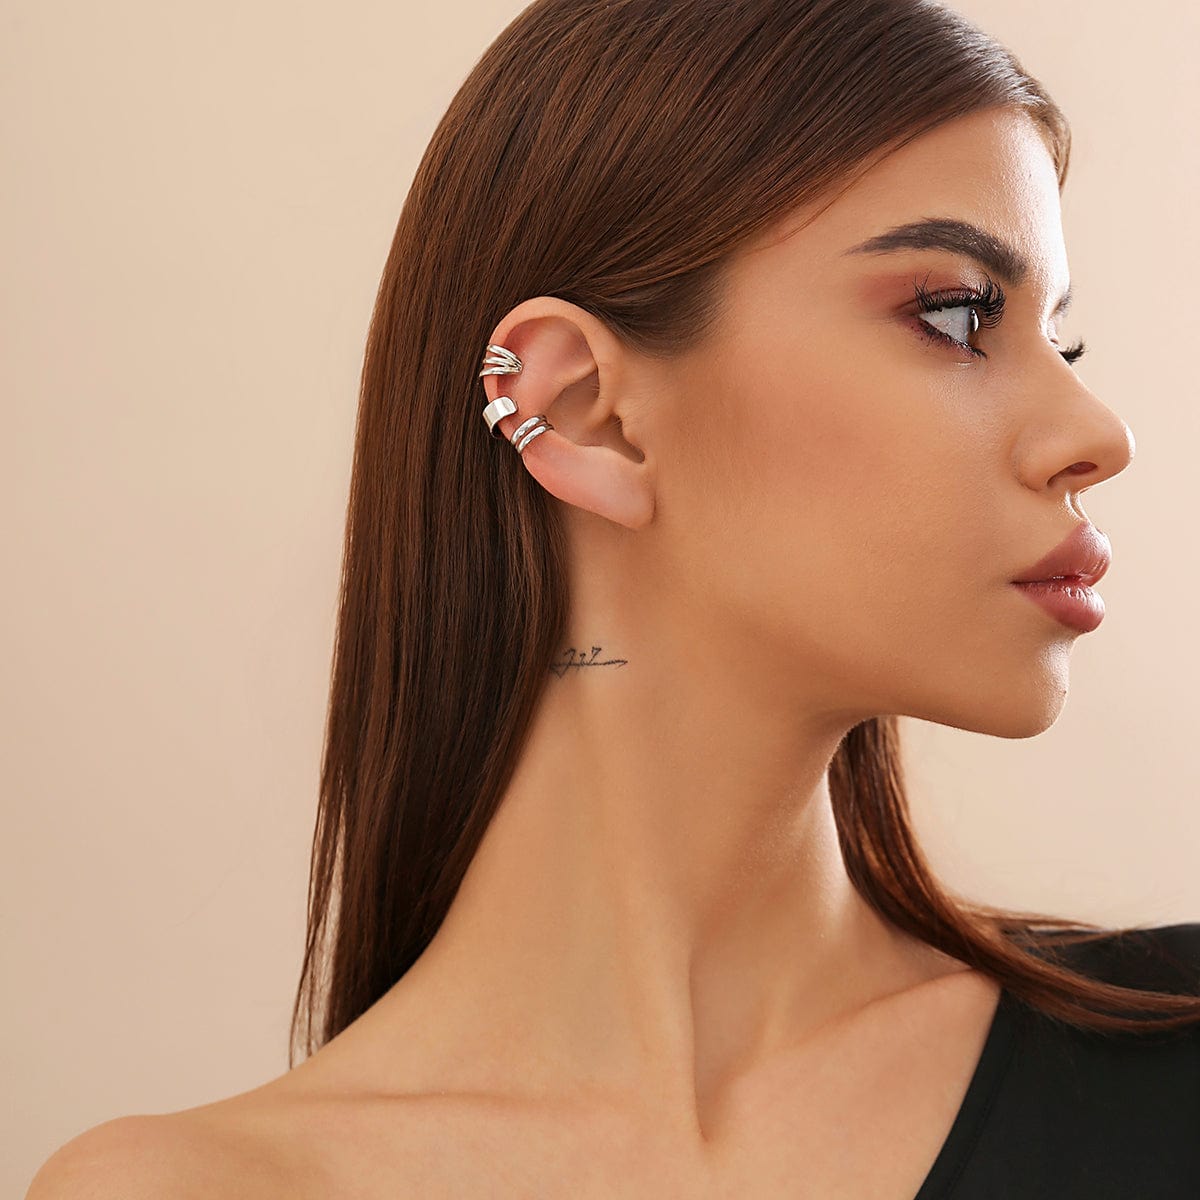 Minimalist Gold Silver Plated Ear Cuff Earrings Set - ArtGalleryZen